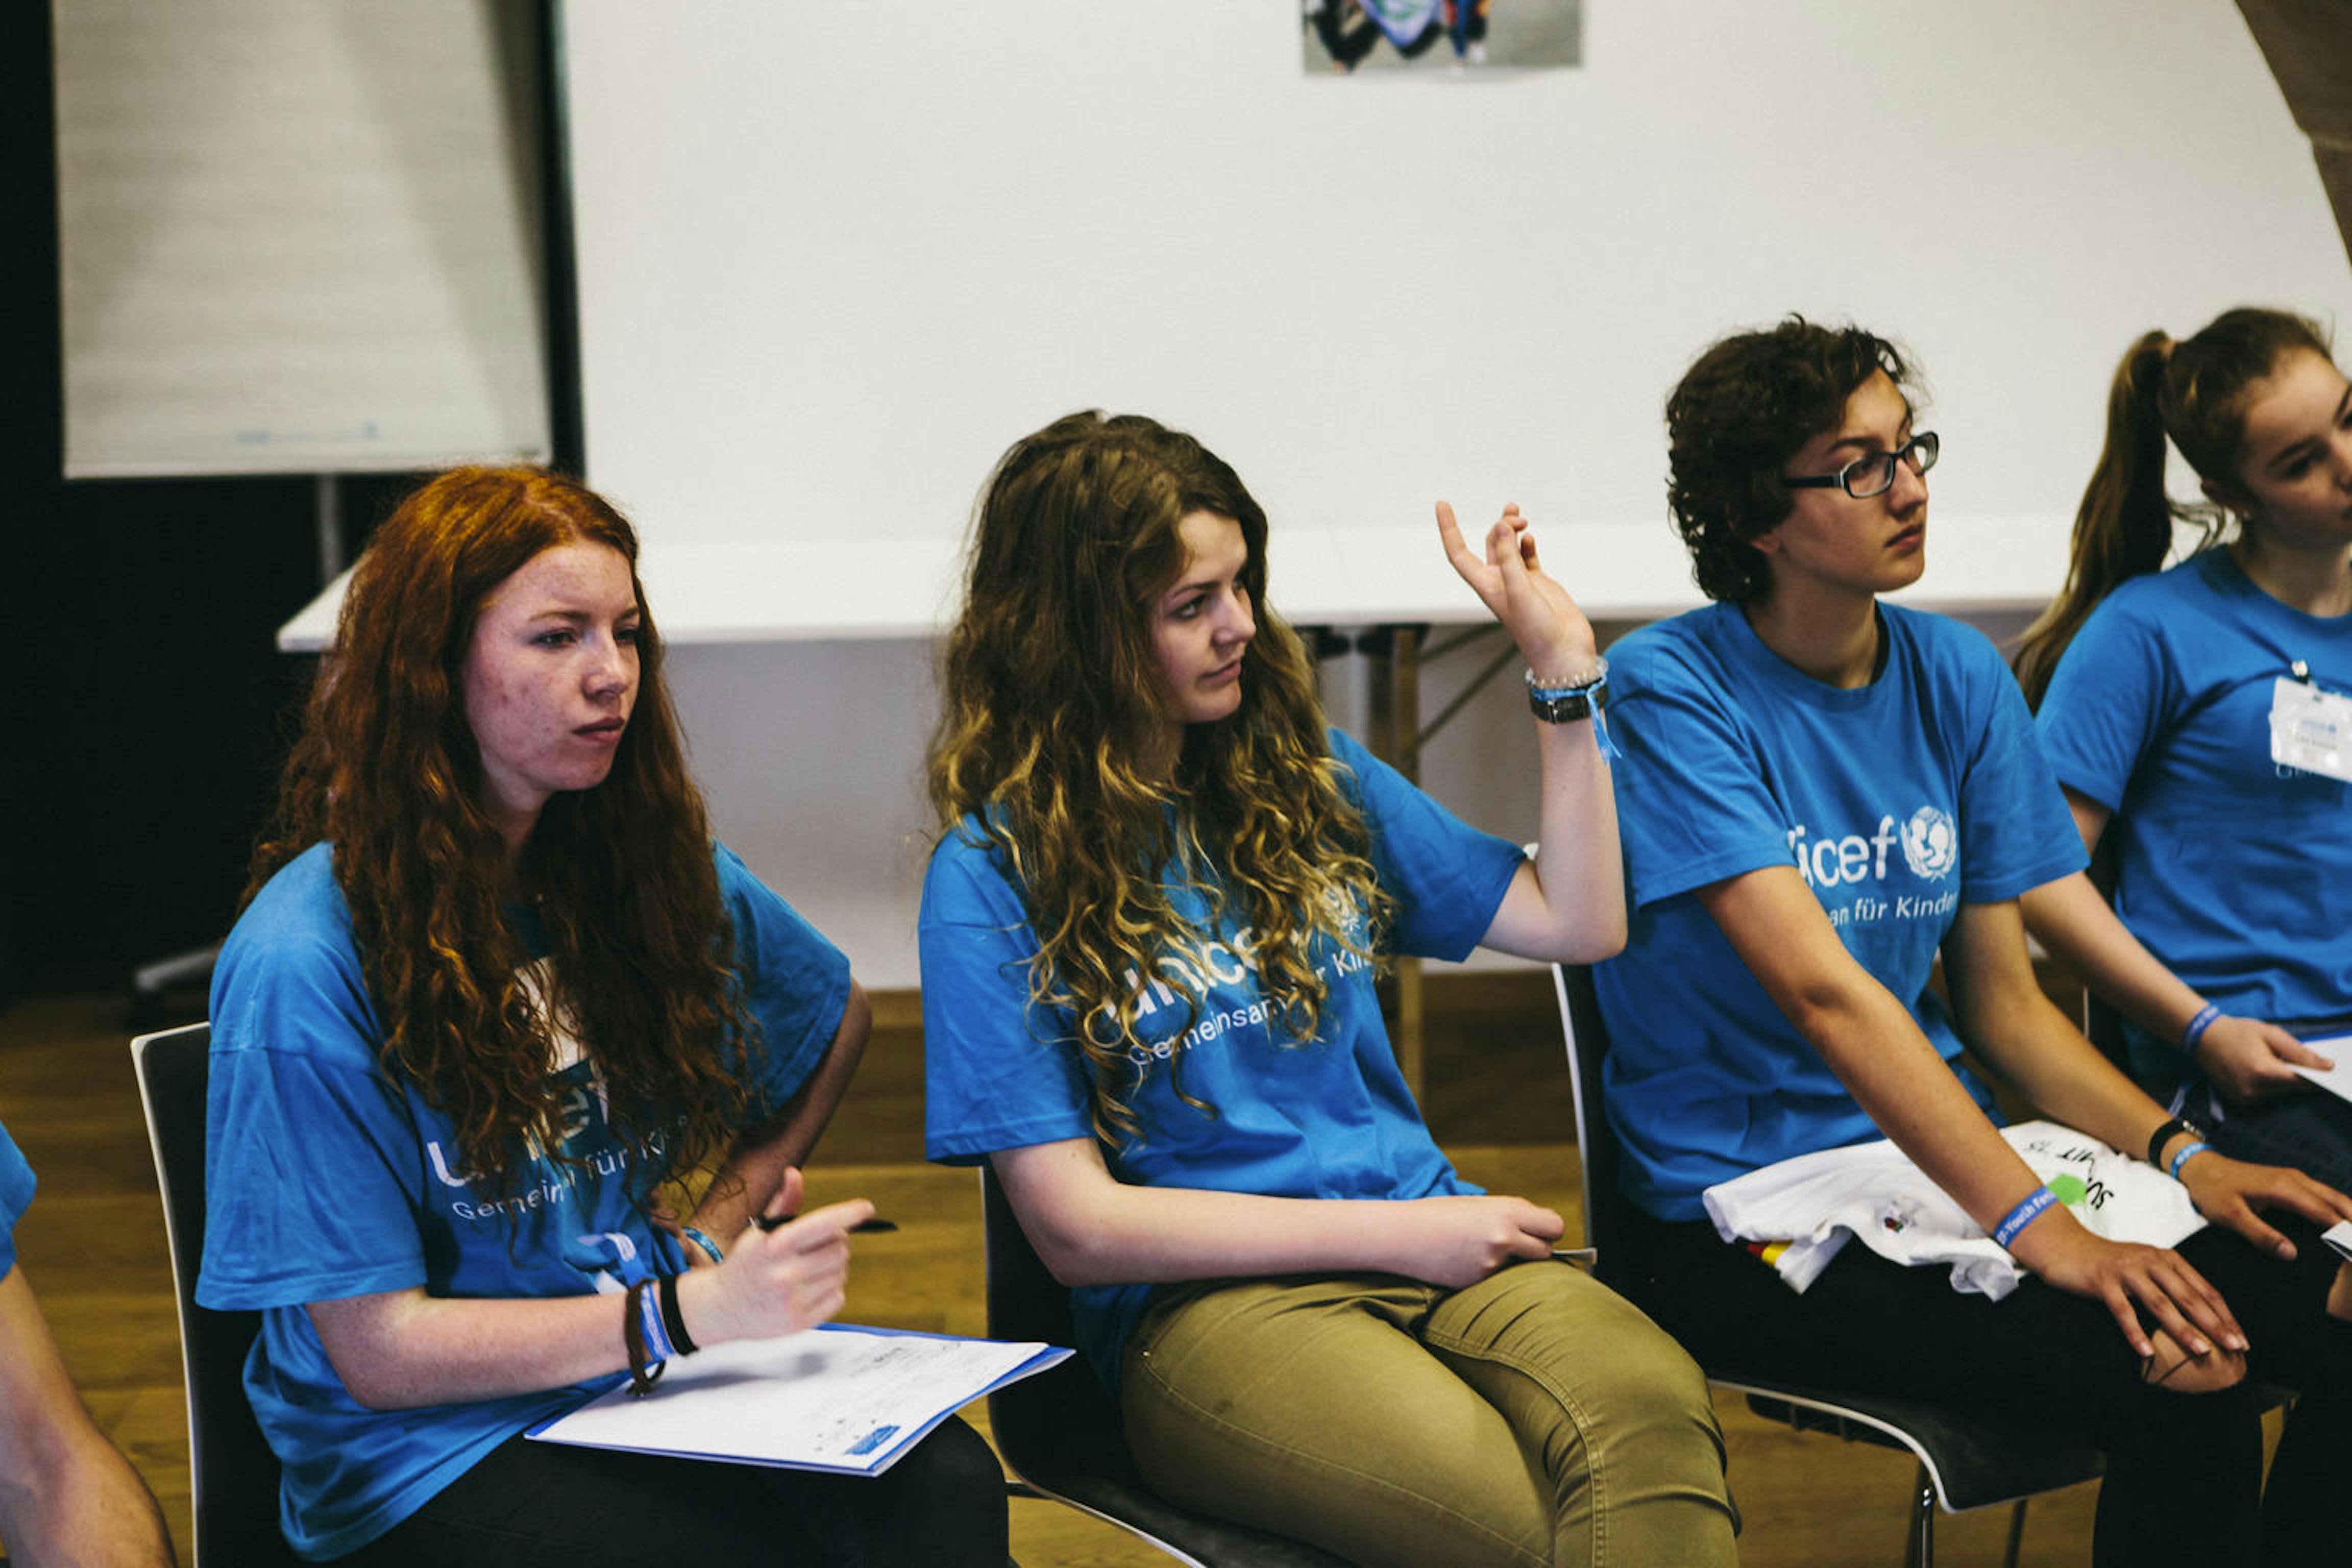 Youth Festival in Germania: ragazzi e ragazze partecipano a una sessione con la maglia dell'UNICEF